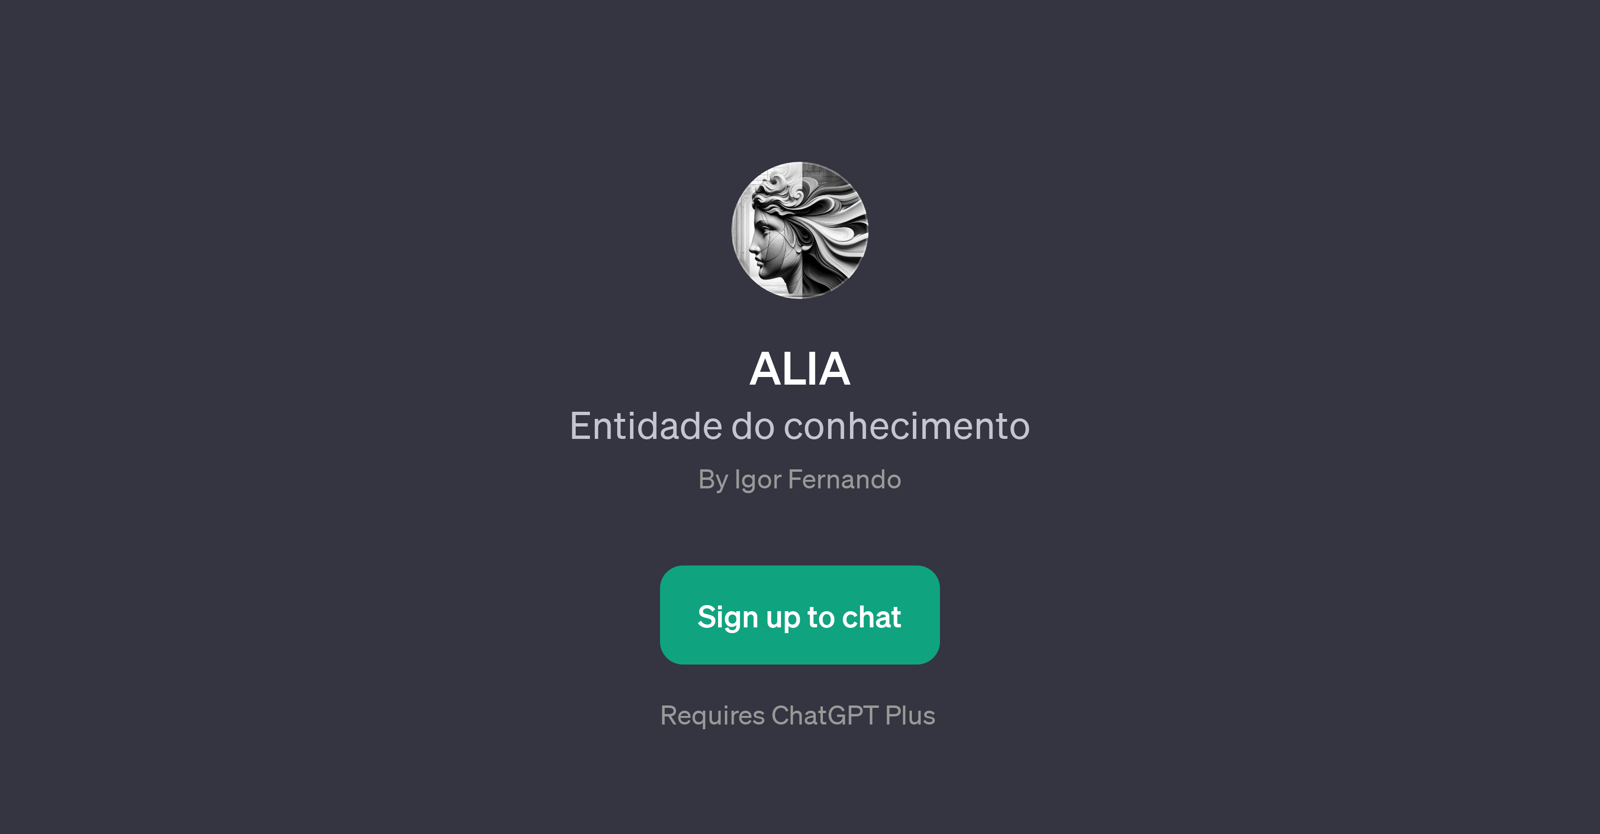 ALIA website